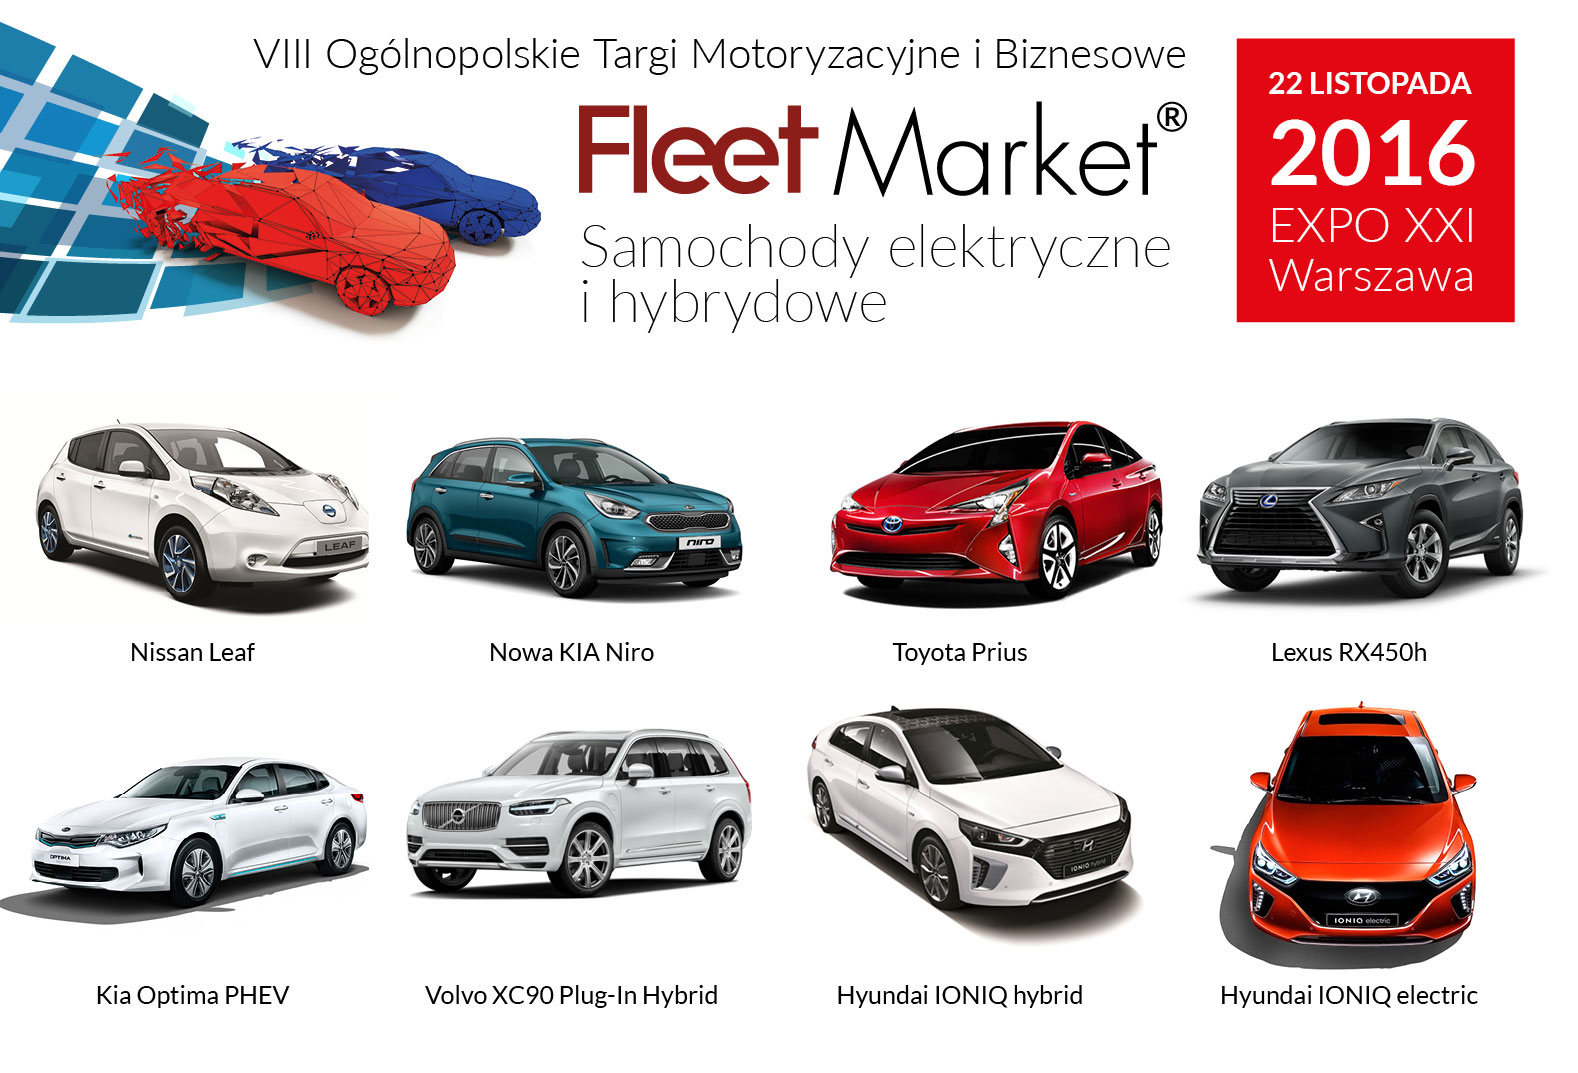 Fleet Market – auta elektryczne i hybrydowe